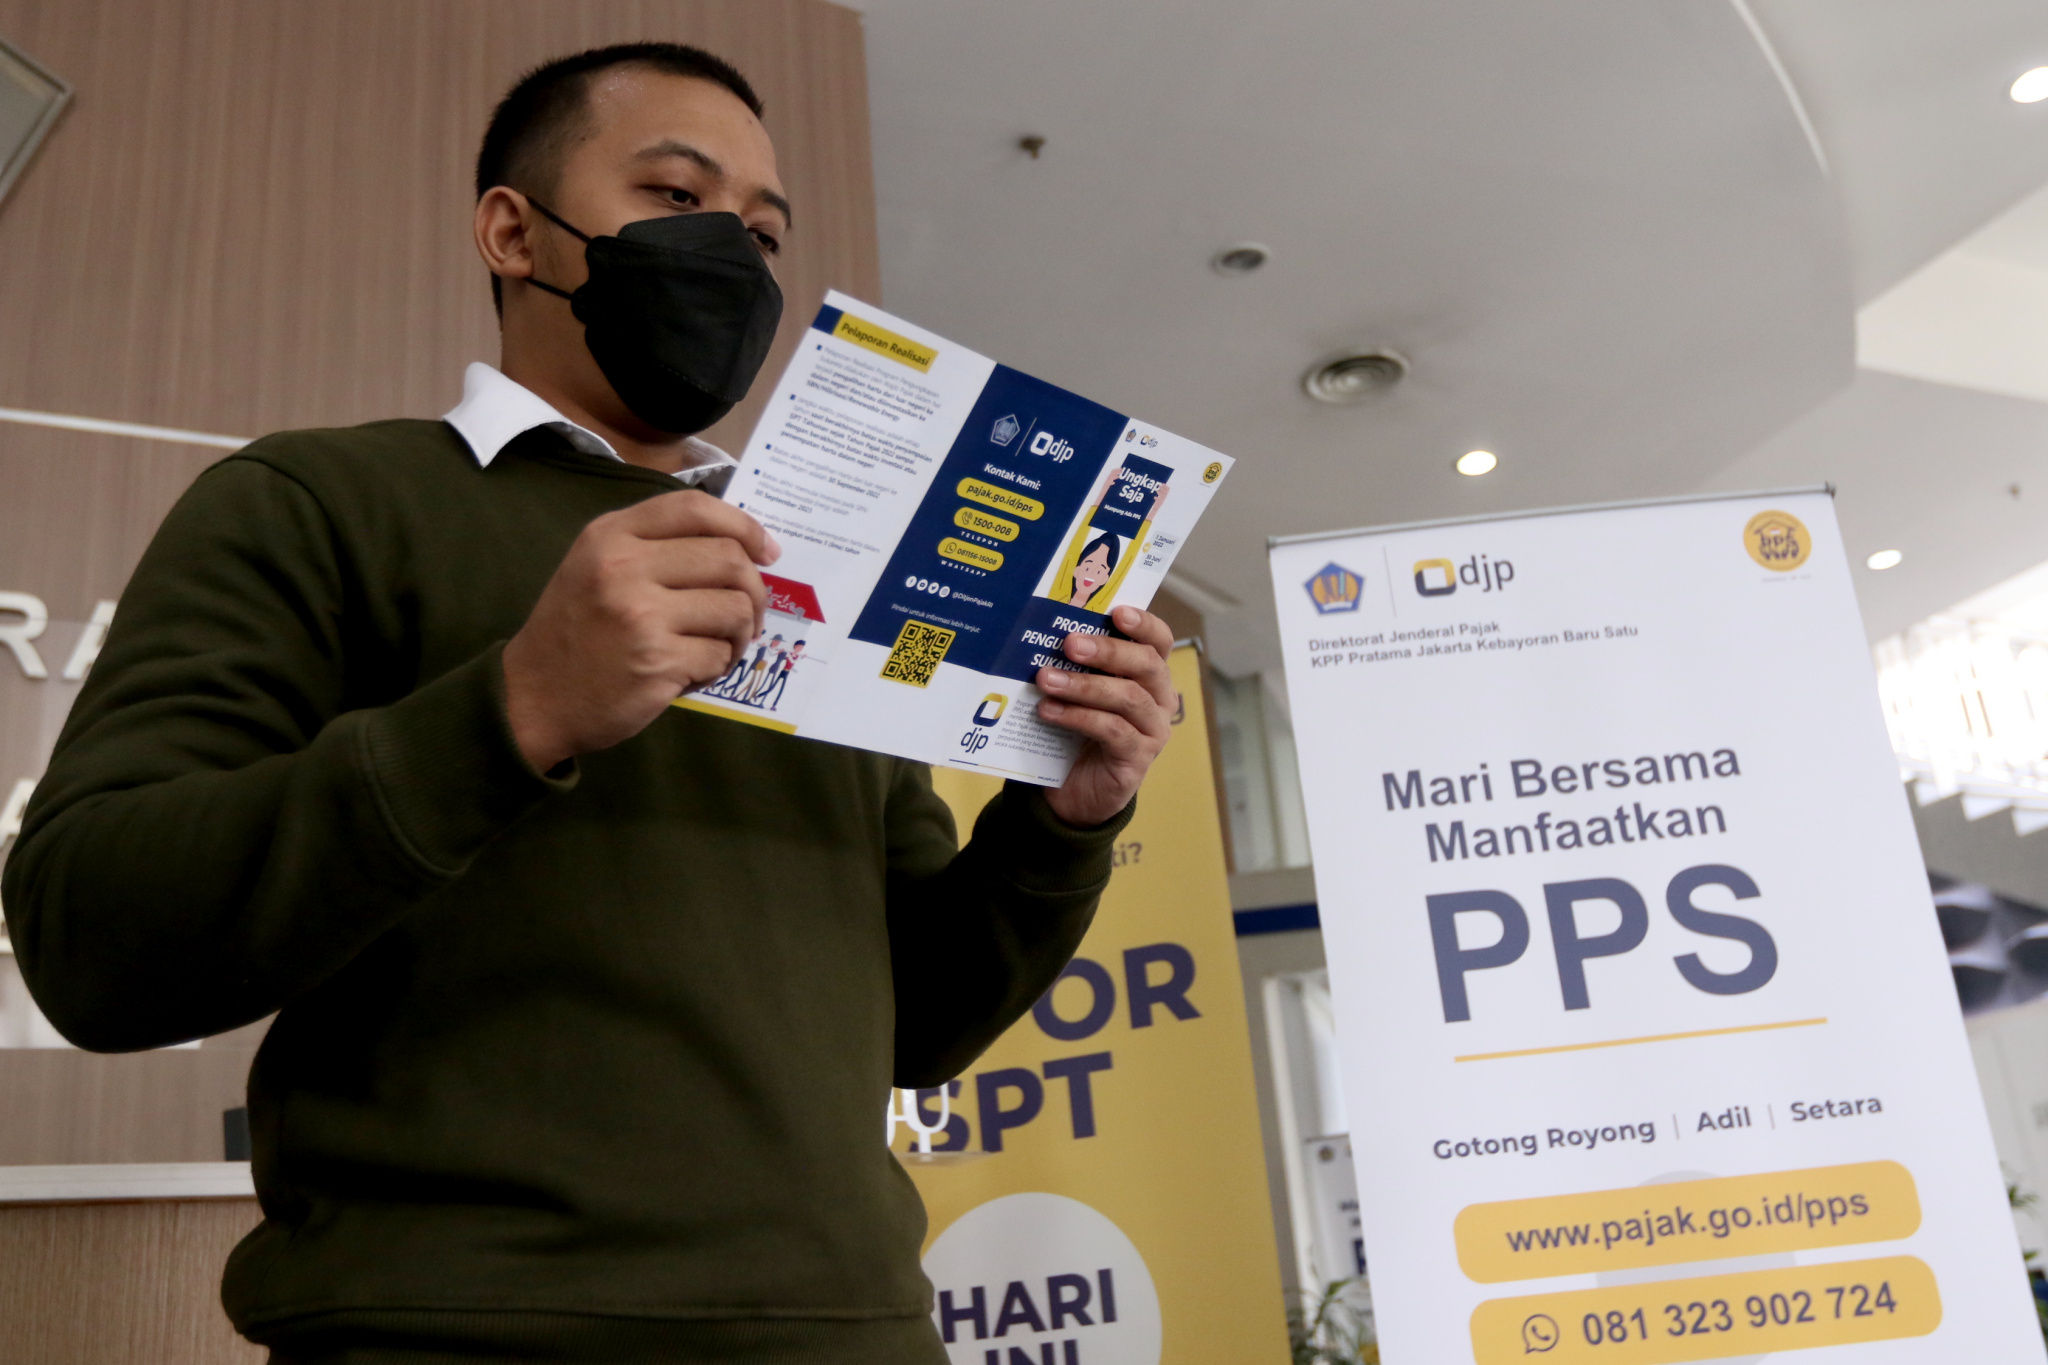 Wajib pajak mencari informasi mengenai Program Pengungkapan Sukarela (PPS) di salah satu kantor pelayanan pajak pratama di Jakarta, Jum'at, 11 Maret 2022. Foto: Ismail Pohan/TrenAsia